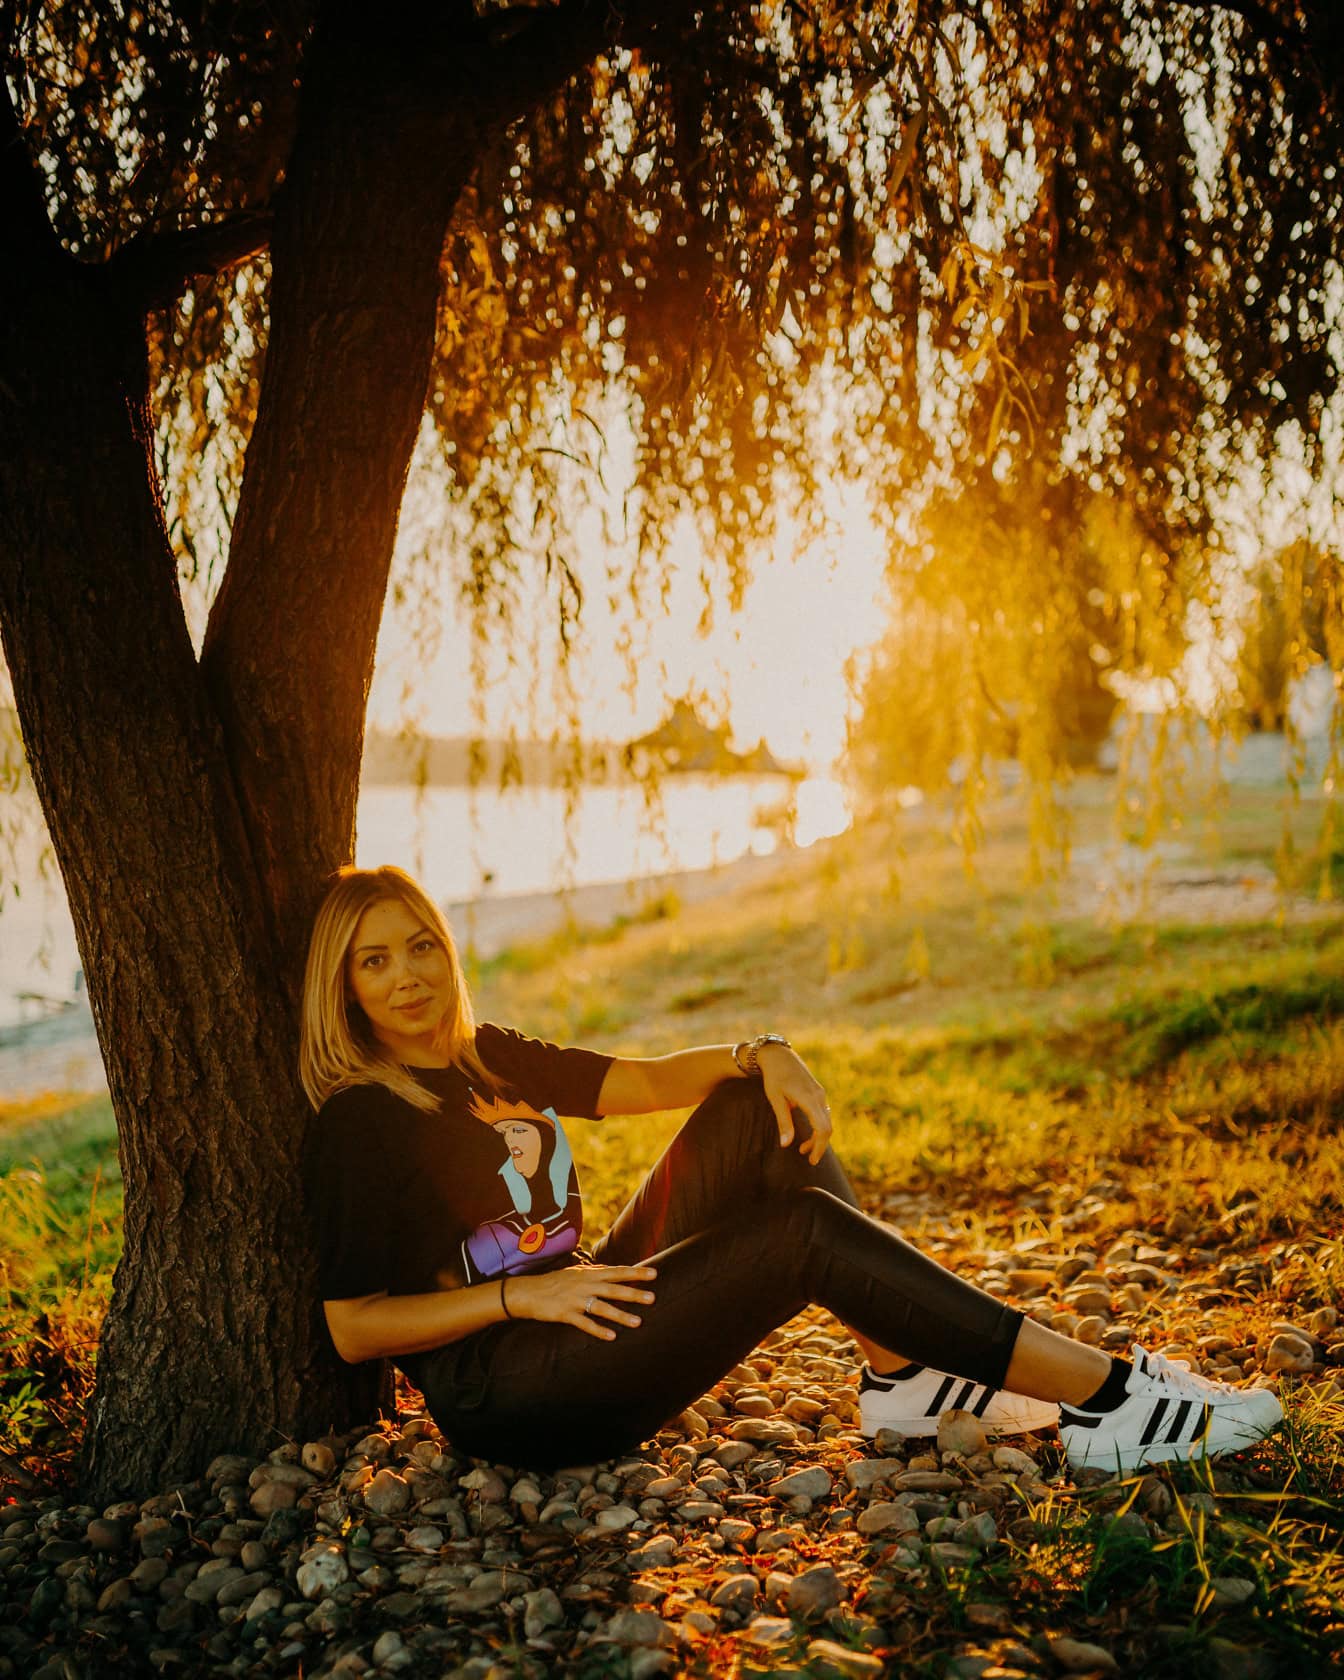 สาวสวยวัยรุ่นนั่งอยู่ใต้ต้นไม้ที่มีพระอาทิตย์ตกที่สวยงามเป็นฉากหลัง